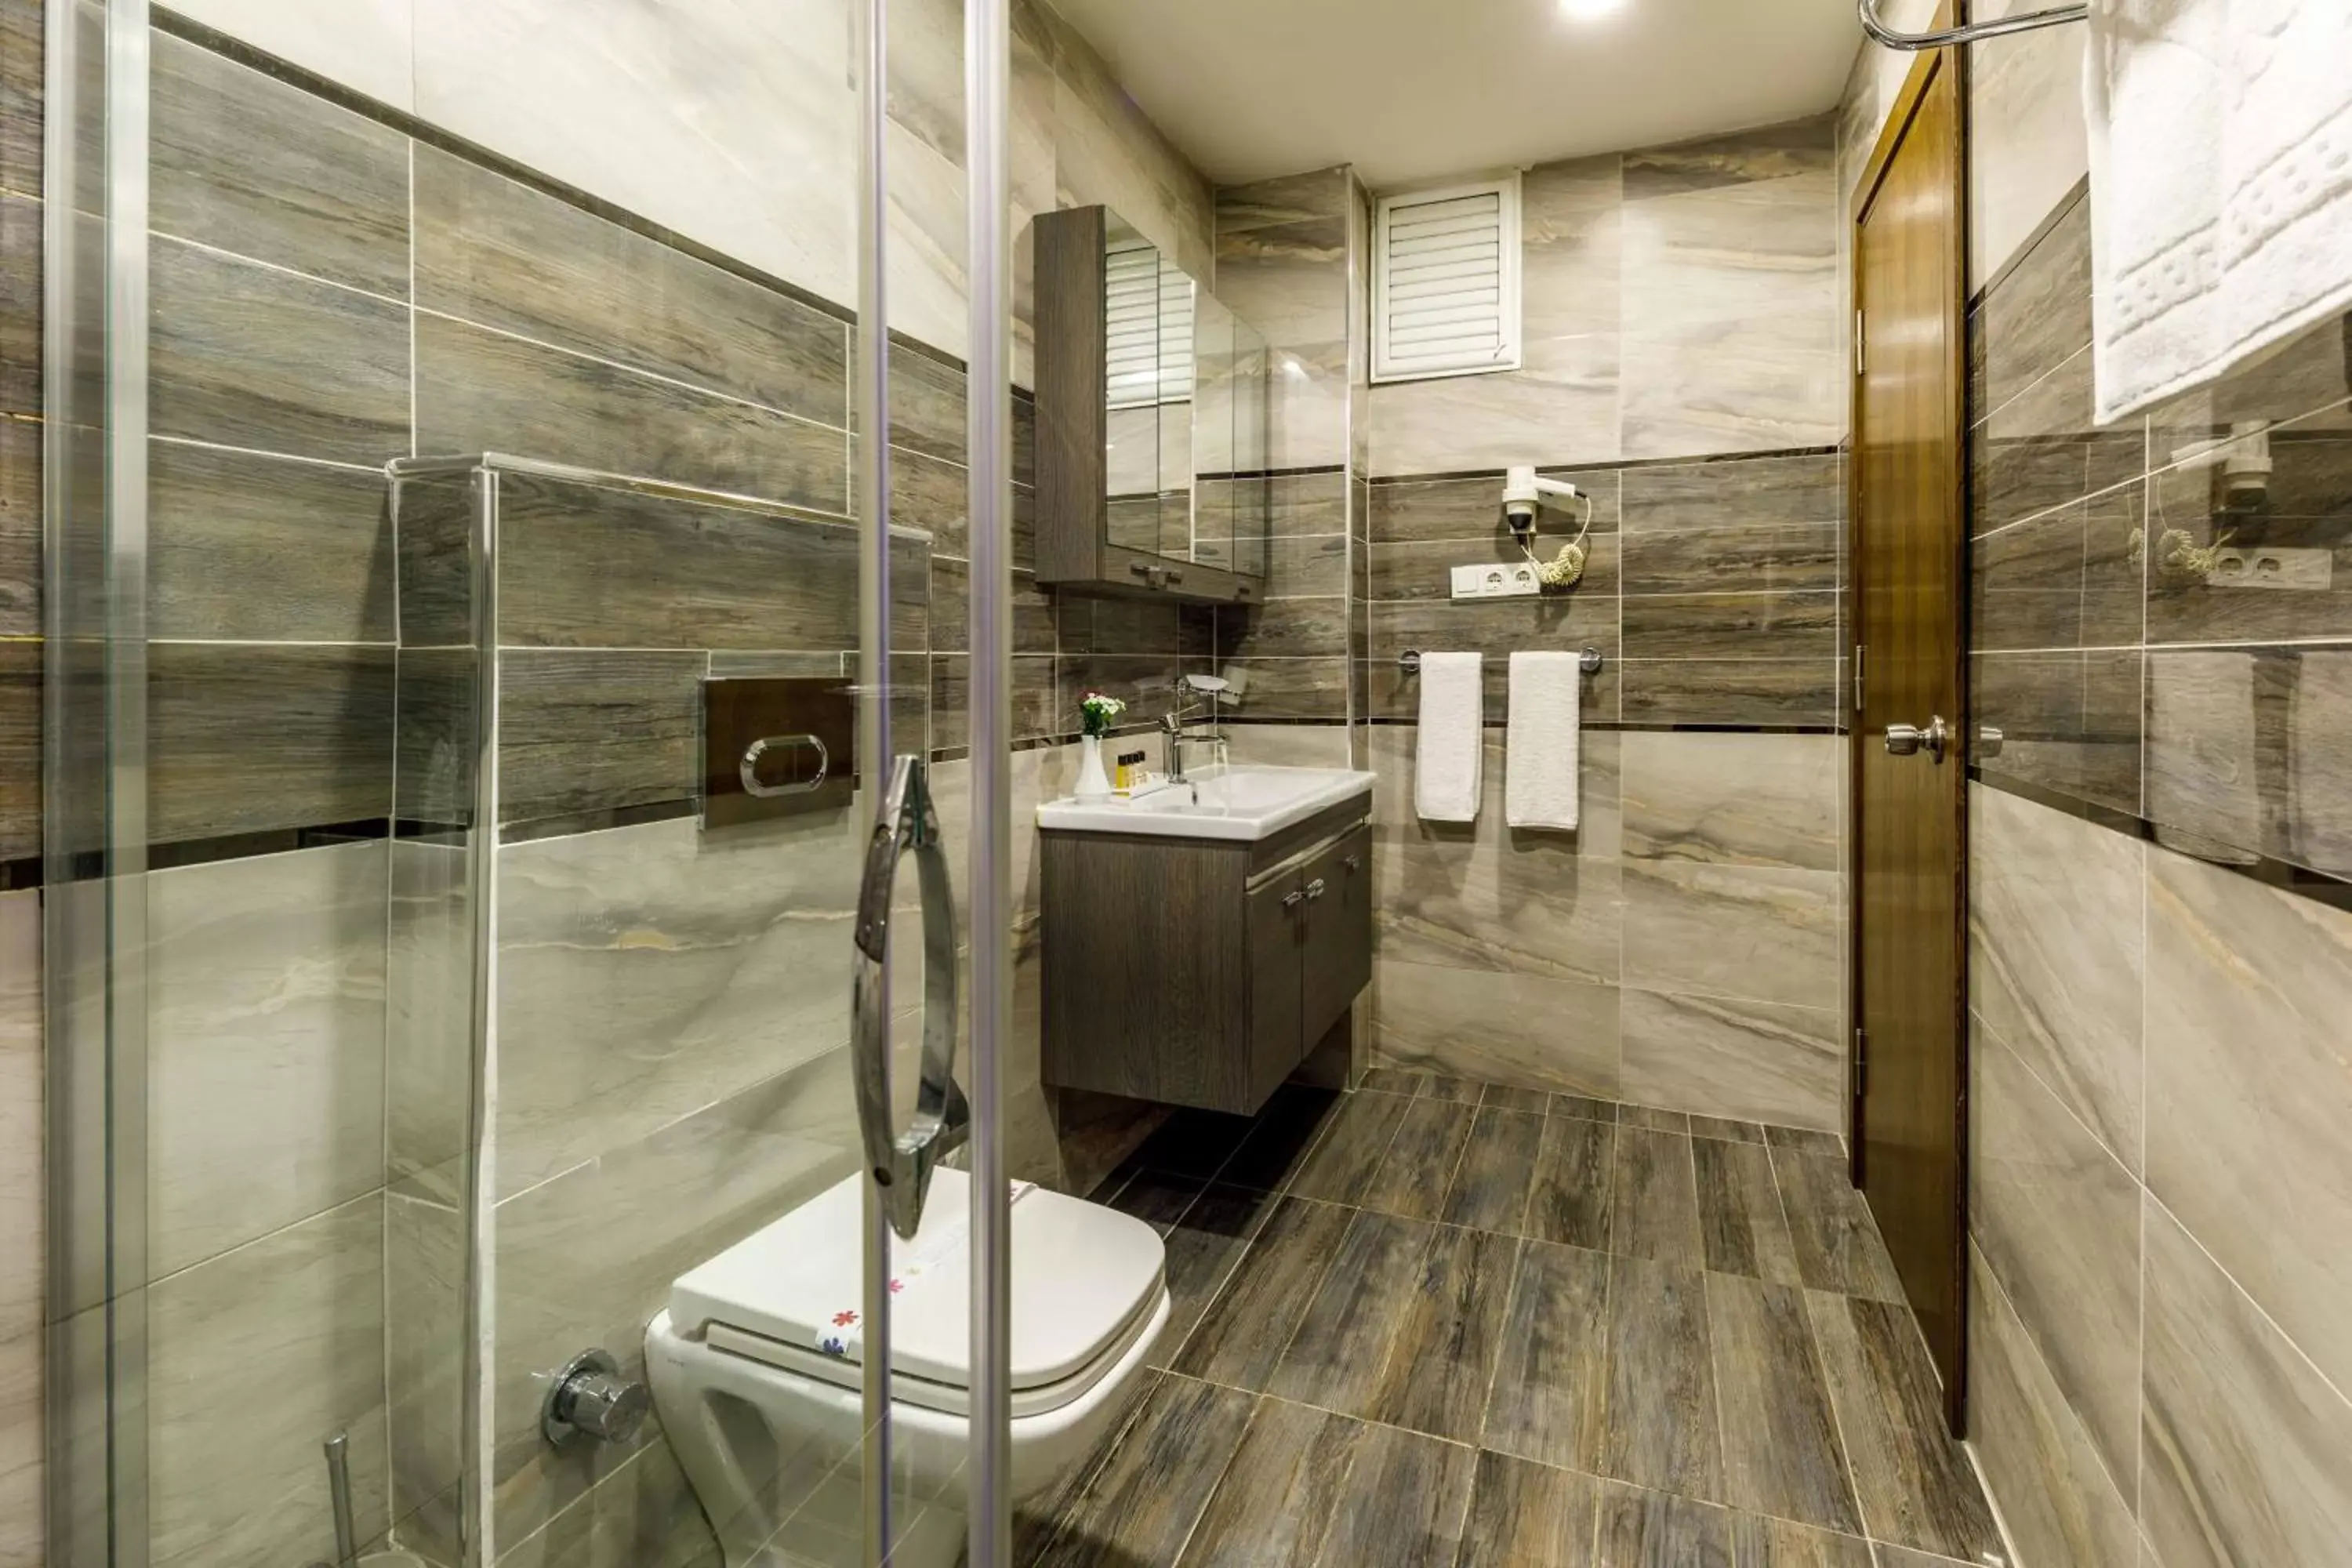 Bathroom in Golden Crown Hotel